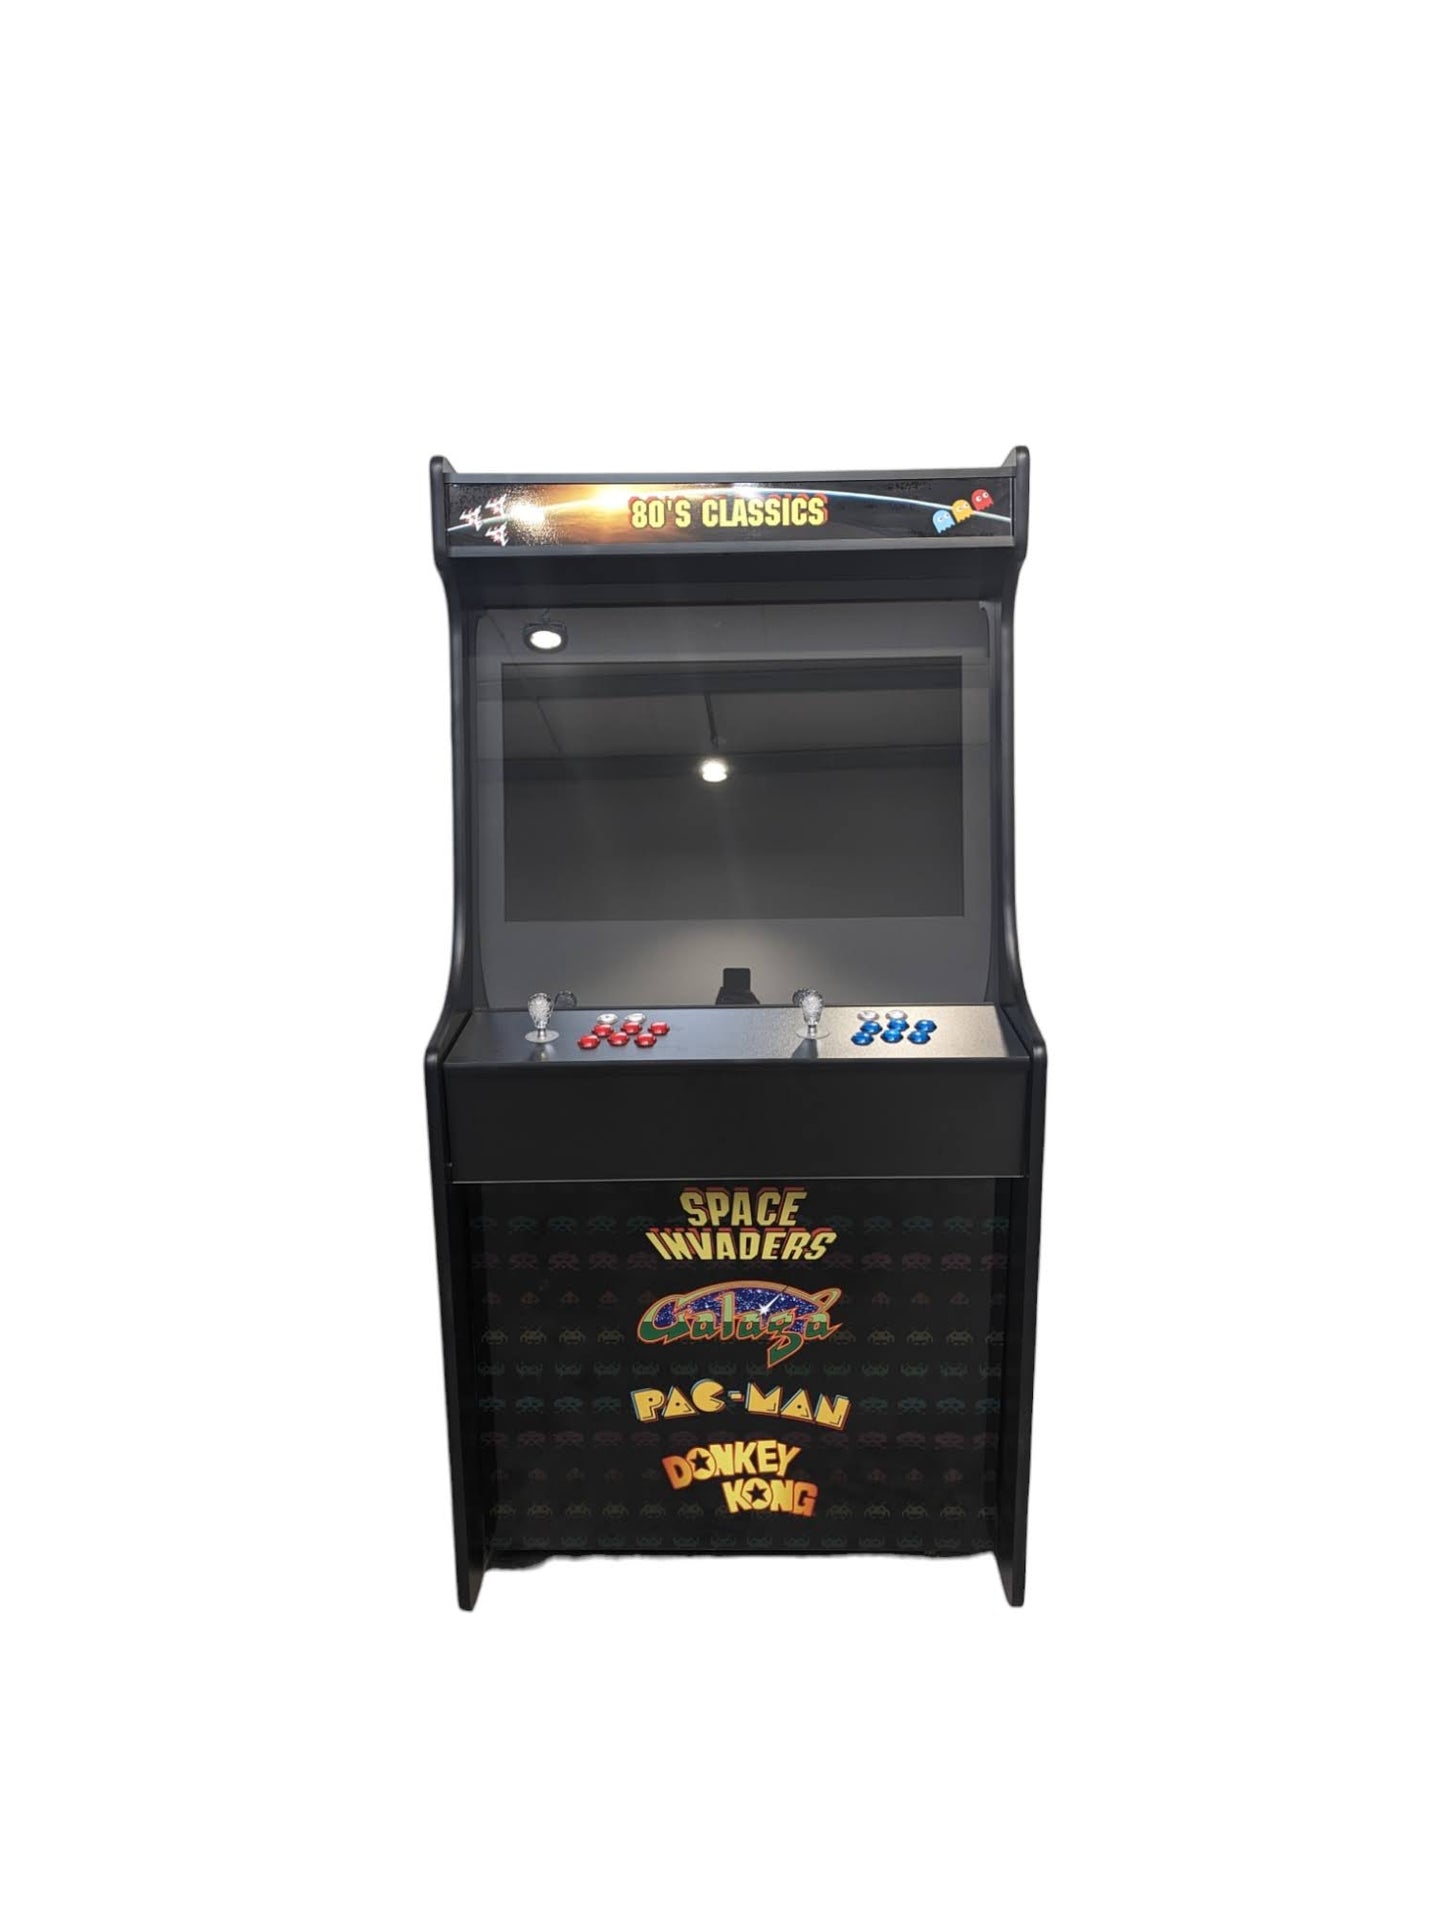 Deluxe 32 Arcade Machine - 80s Theme